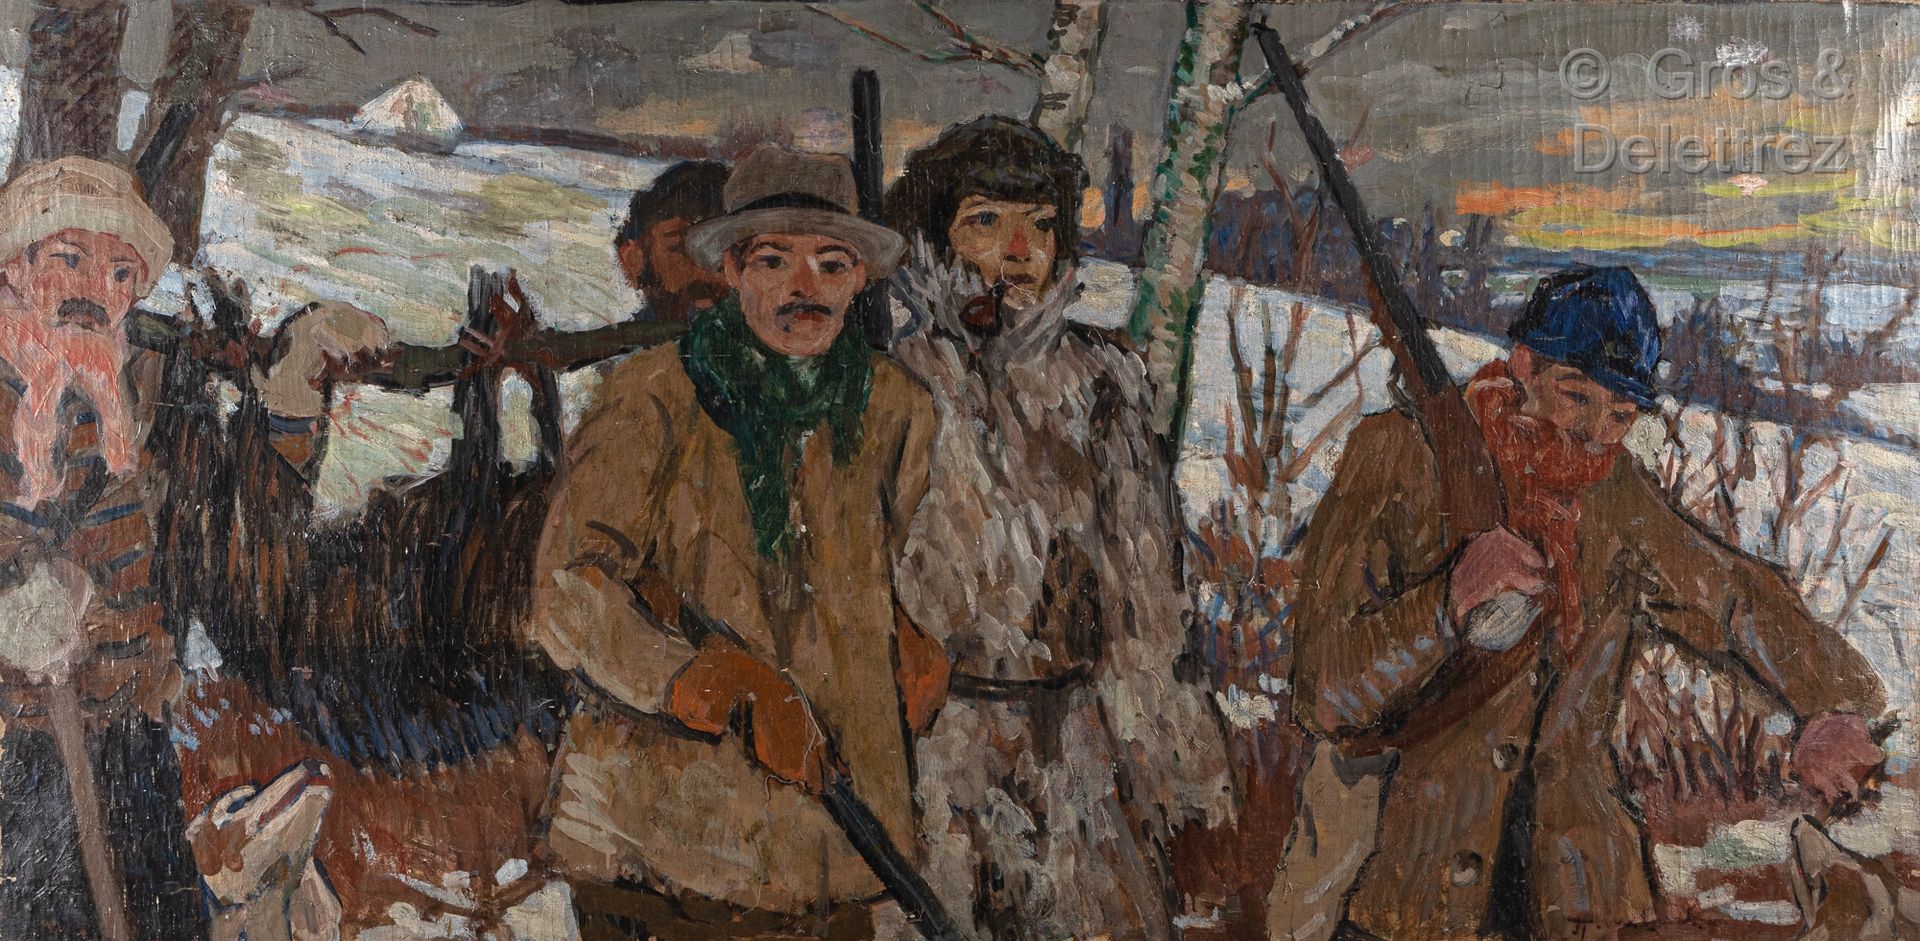 Null 亨伯特（20岁）

猎人在冬季的聚会场所

布面油画，右下角有签名

80 x 160厘米